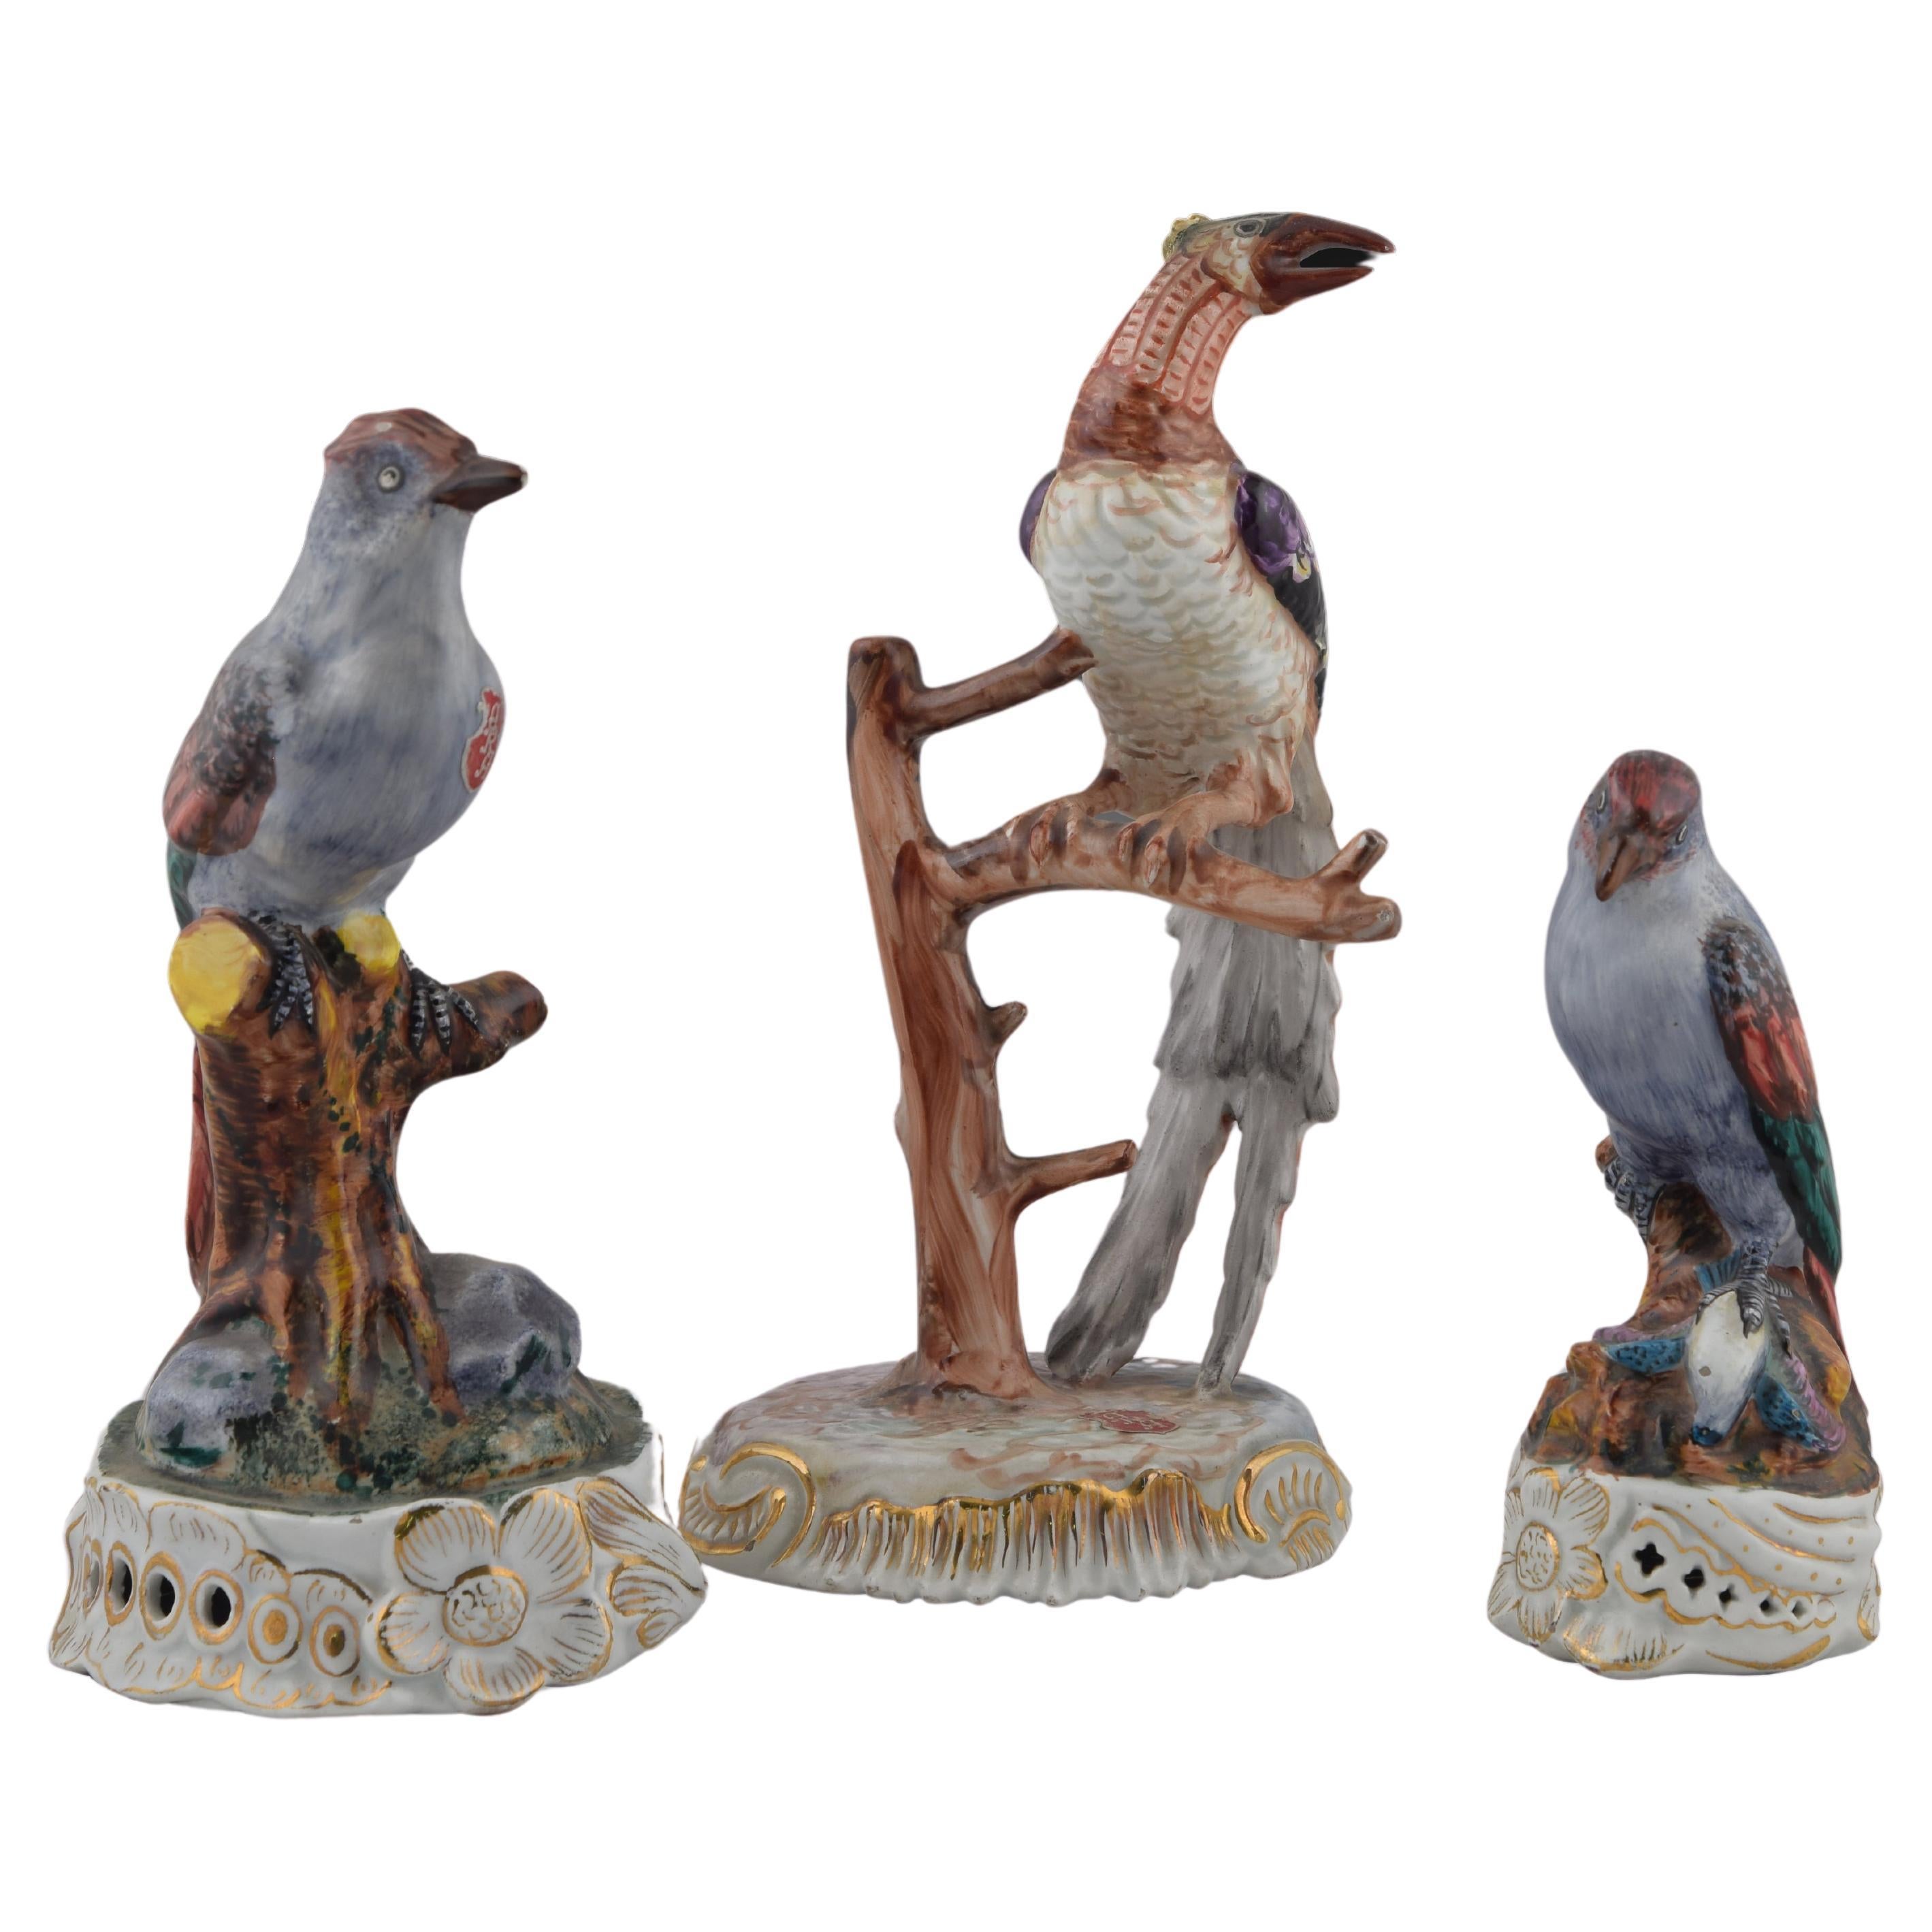 Trois oiseaux. Porcelaine émaillée. Probablement ARA Manises, Valence, Espagne, 20e siècle